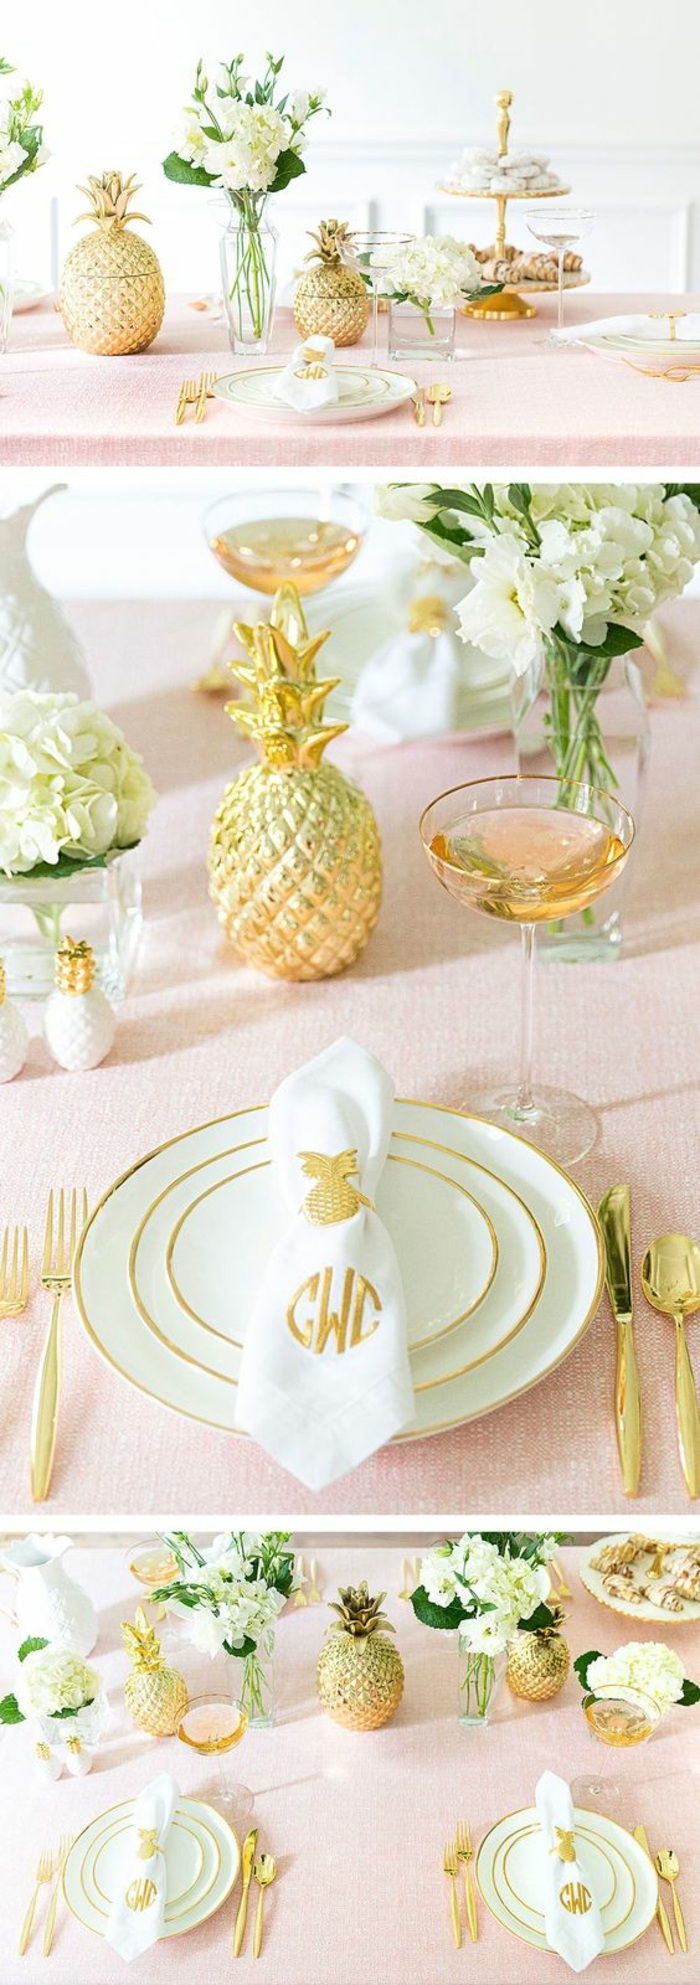 şenlikli masa dekorasyonu, pembe, beyaz ve altın masa dekorasyonu, ananas, altın çatal bıçak takımı